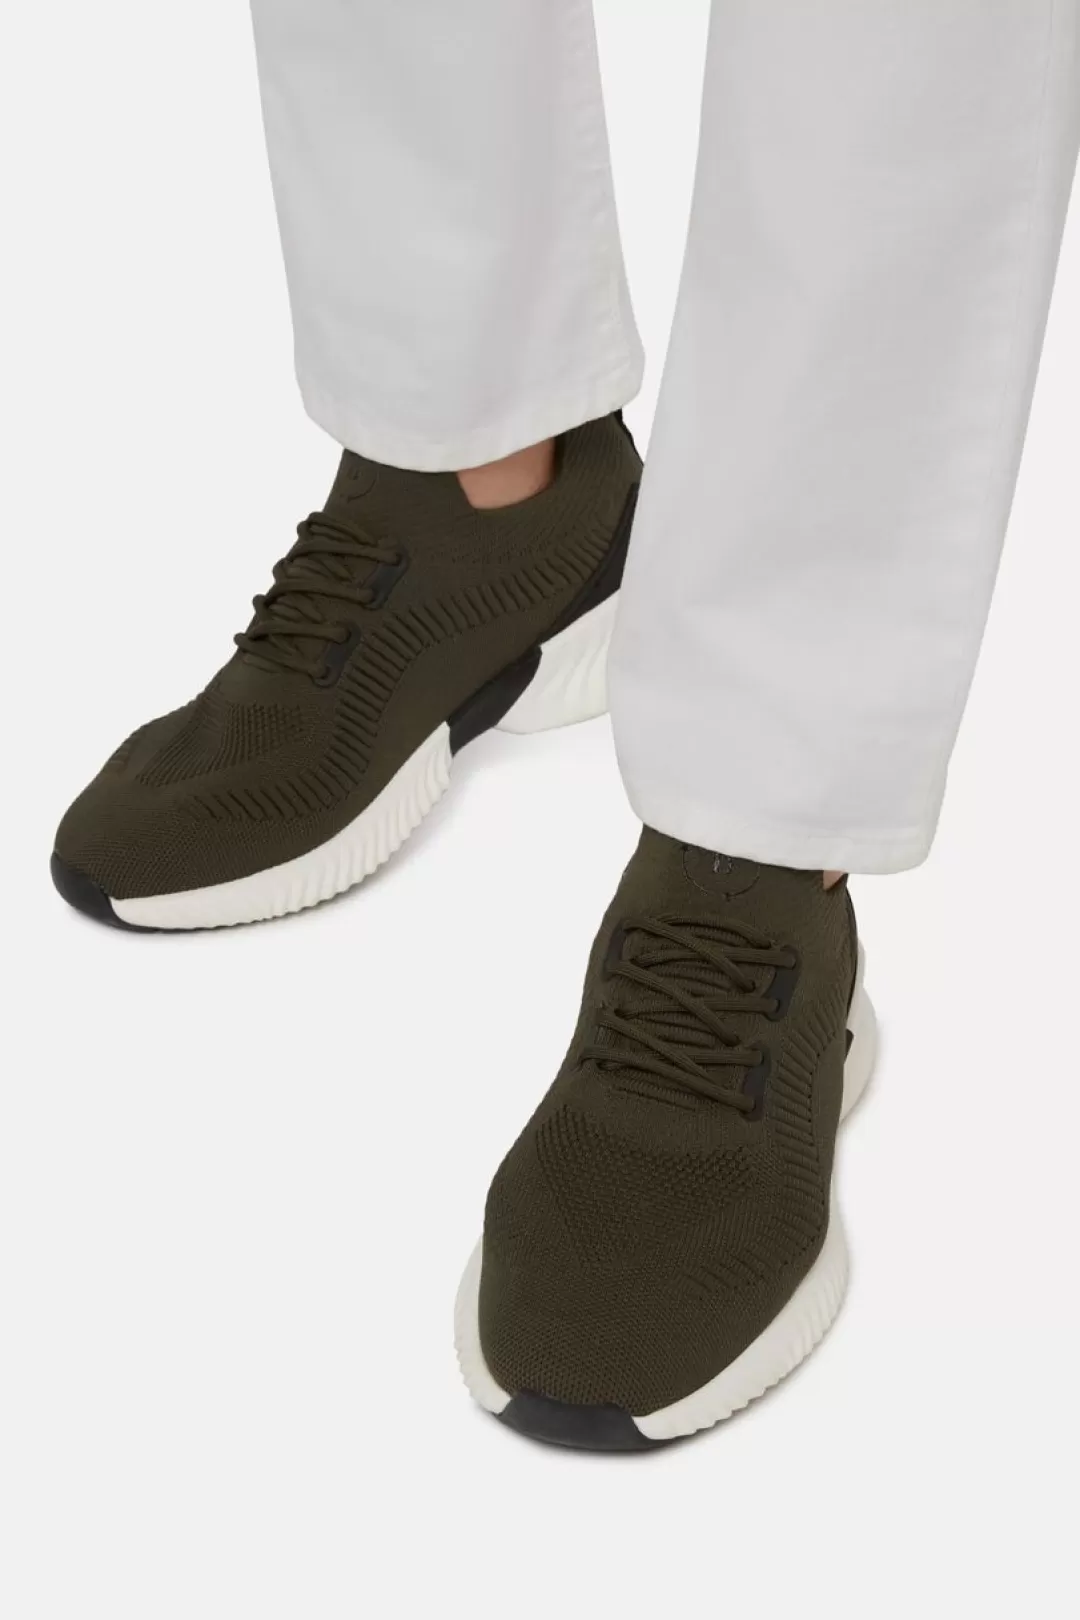 Boggi Sneakers Willow Verdi In Filato Riciclato Militare Cheap